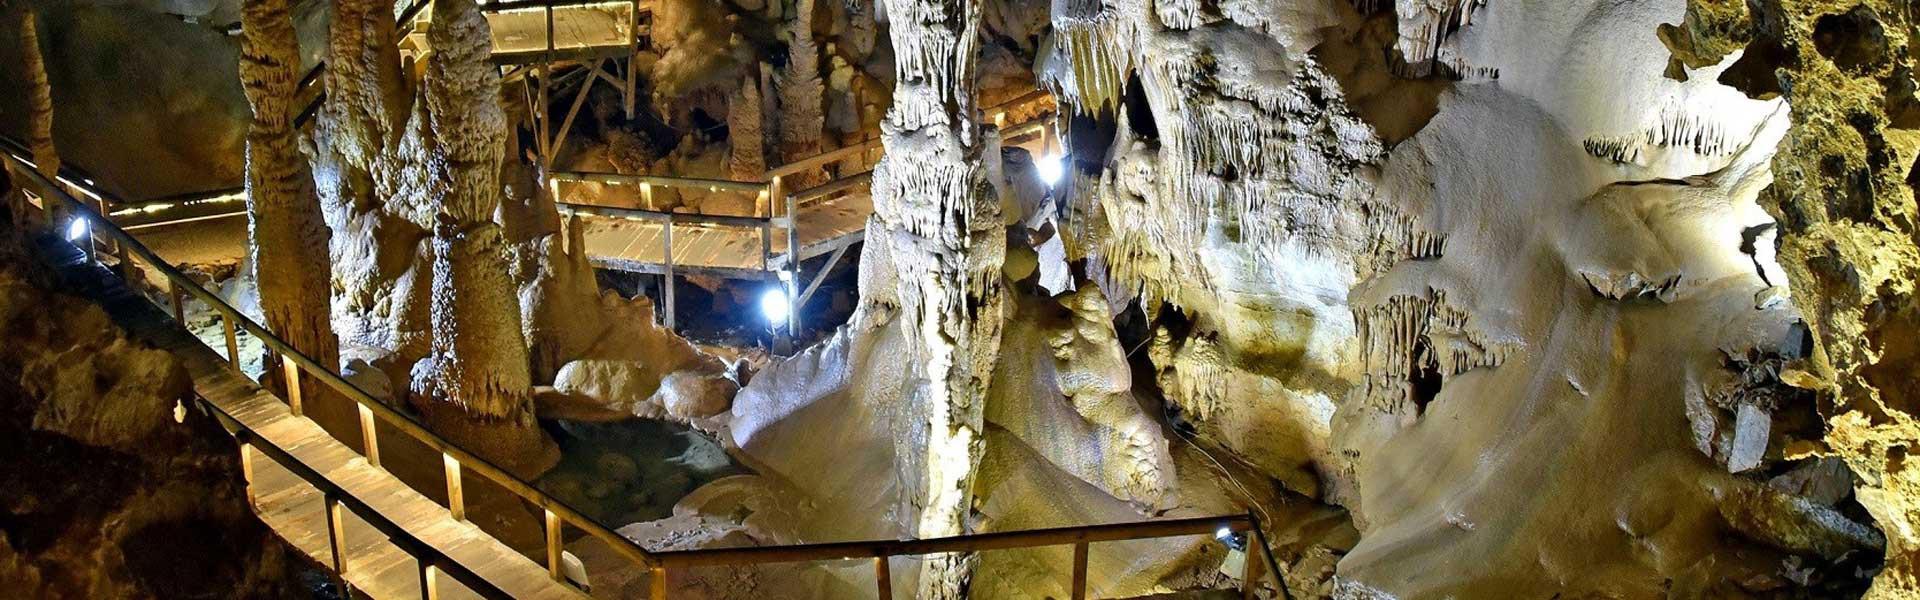 غار کاراجا کوش آداسی Karaja Cave Kusadasi